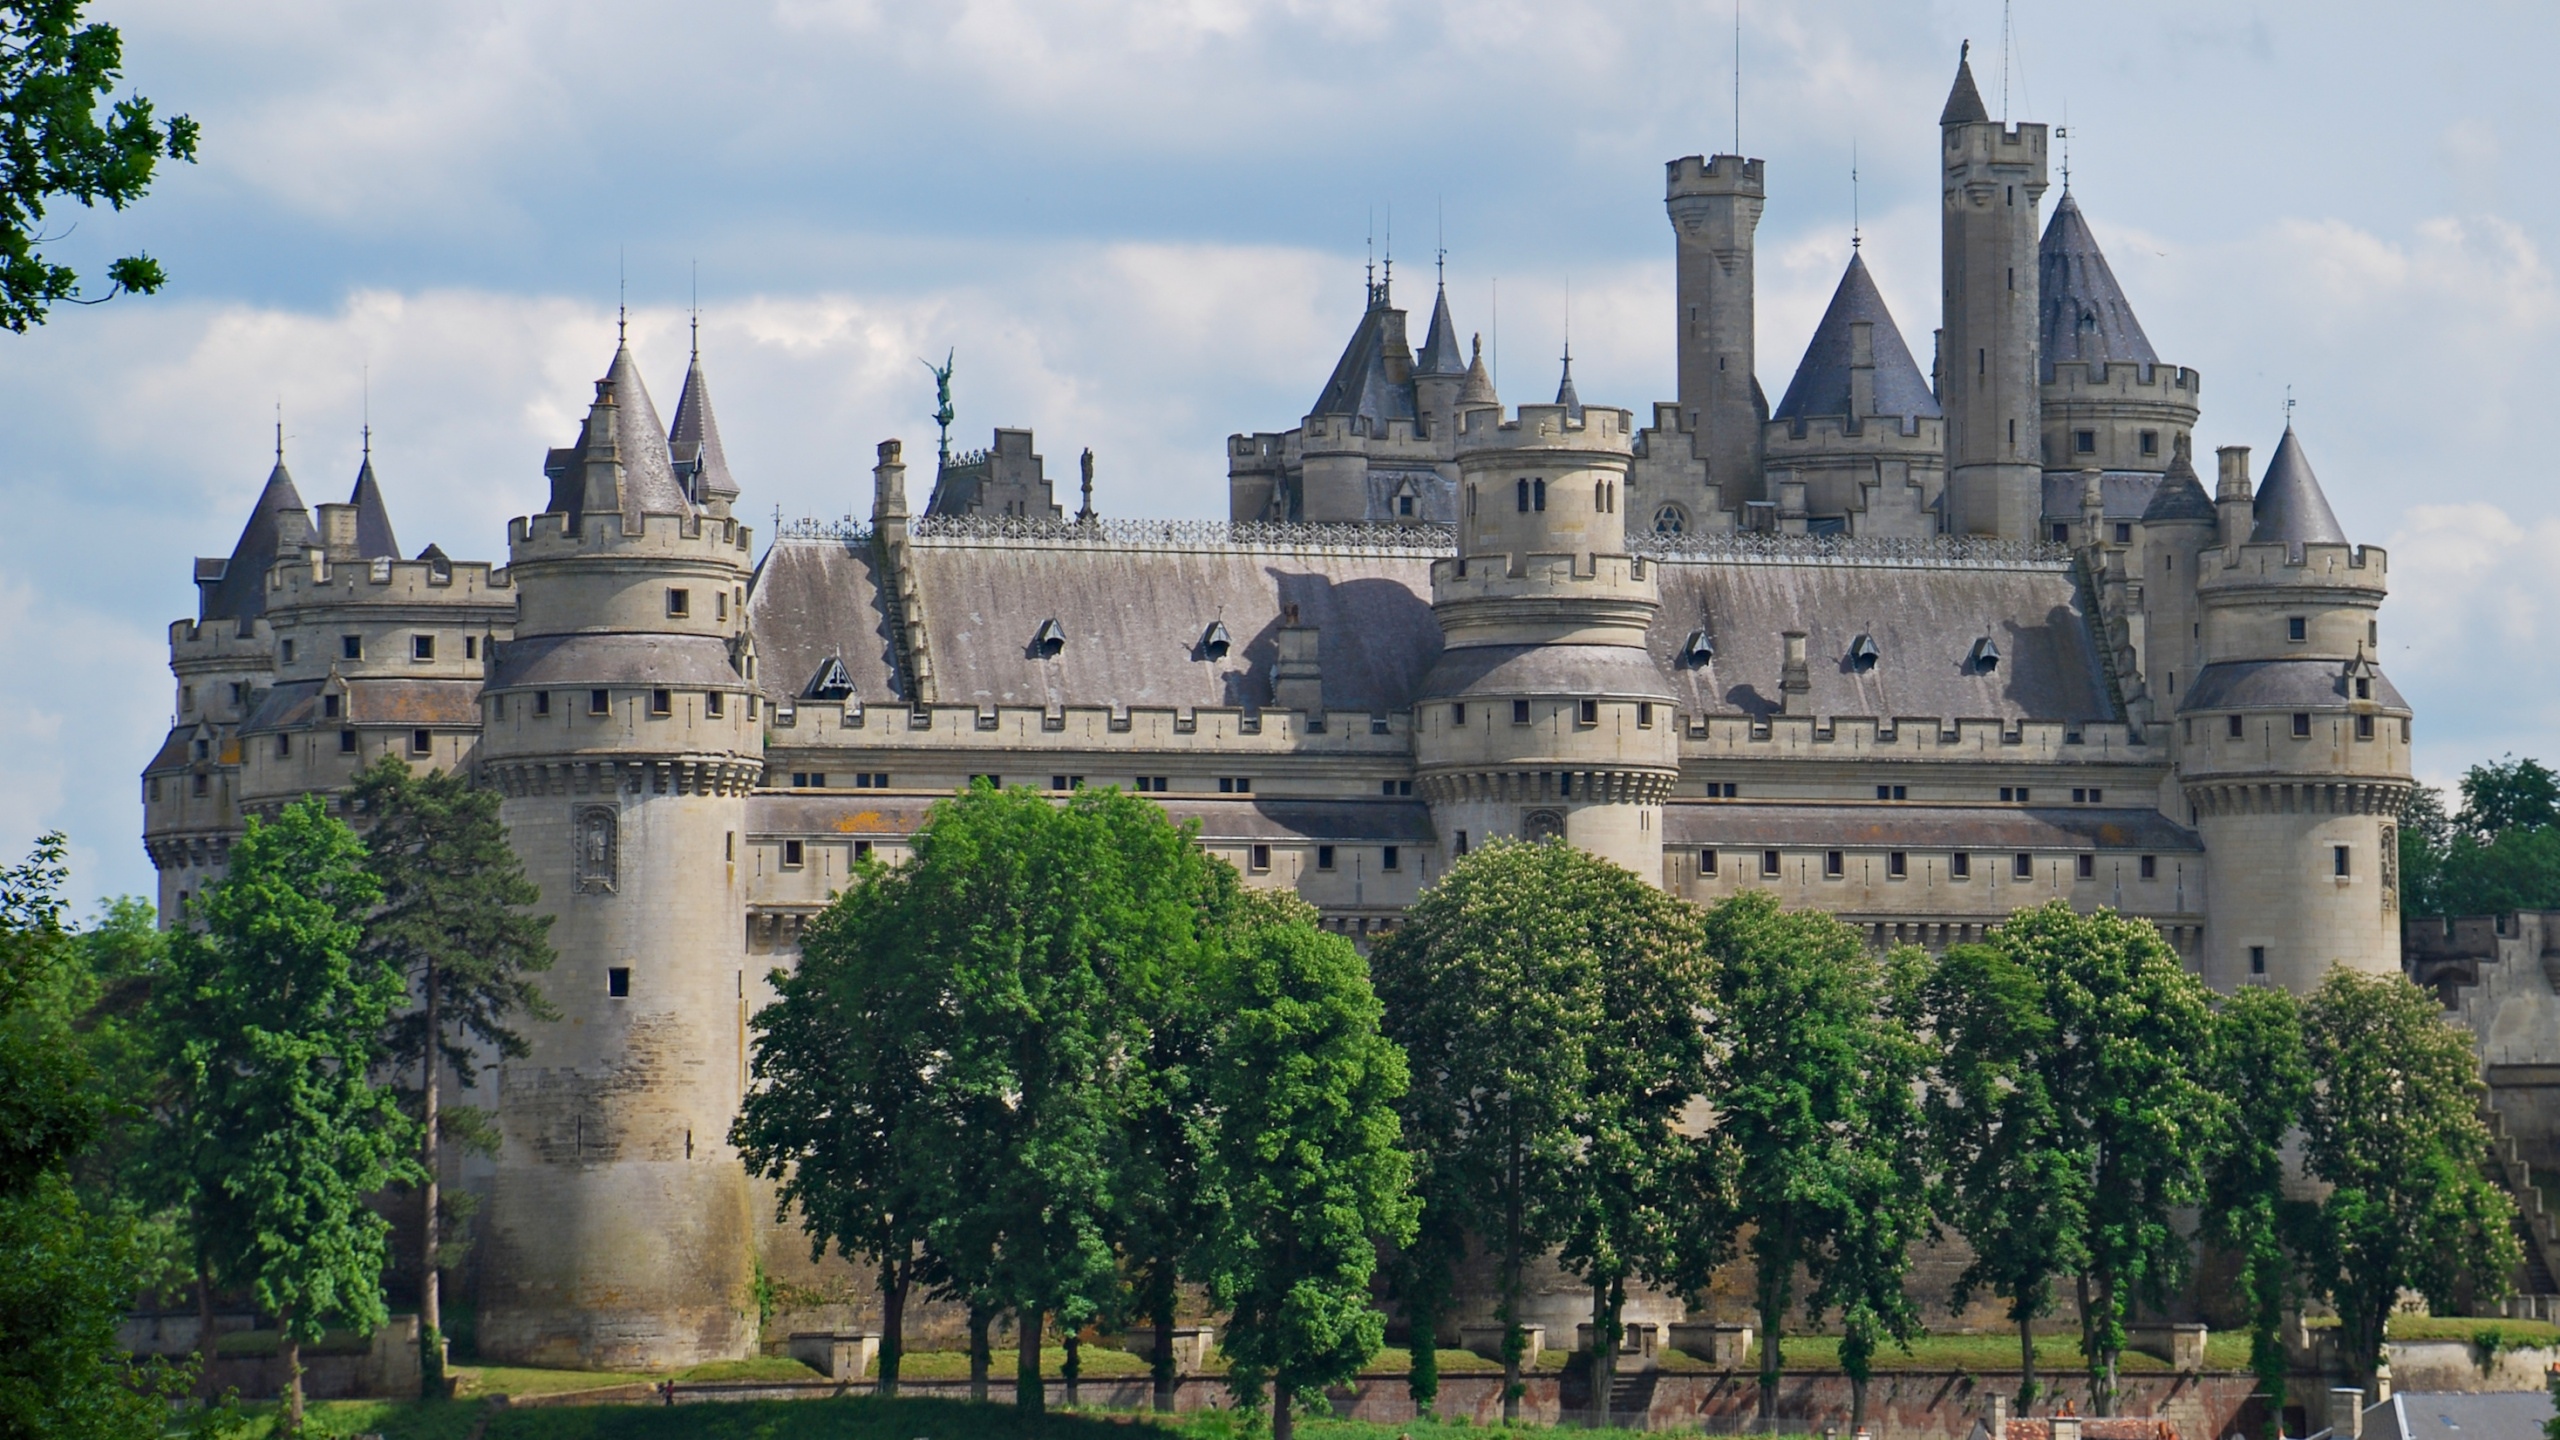 城堡, 防御工事, 中世纪建筑风格, 庄家, 艾尔城堡 壁纸 2560x1440 允许